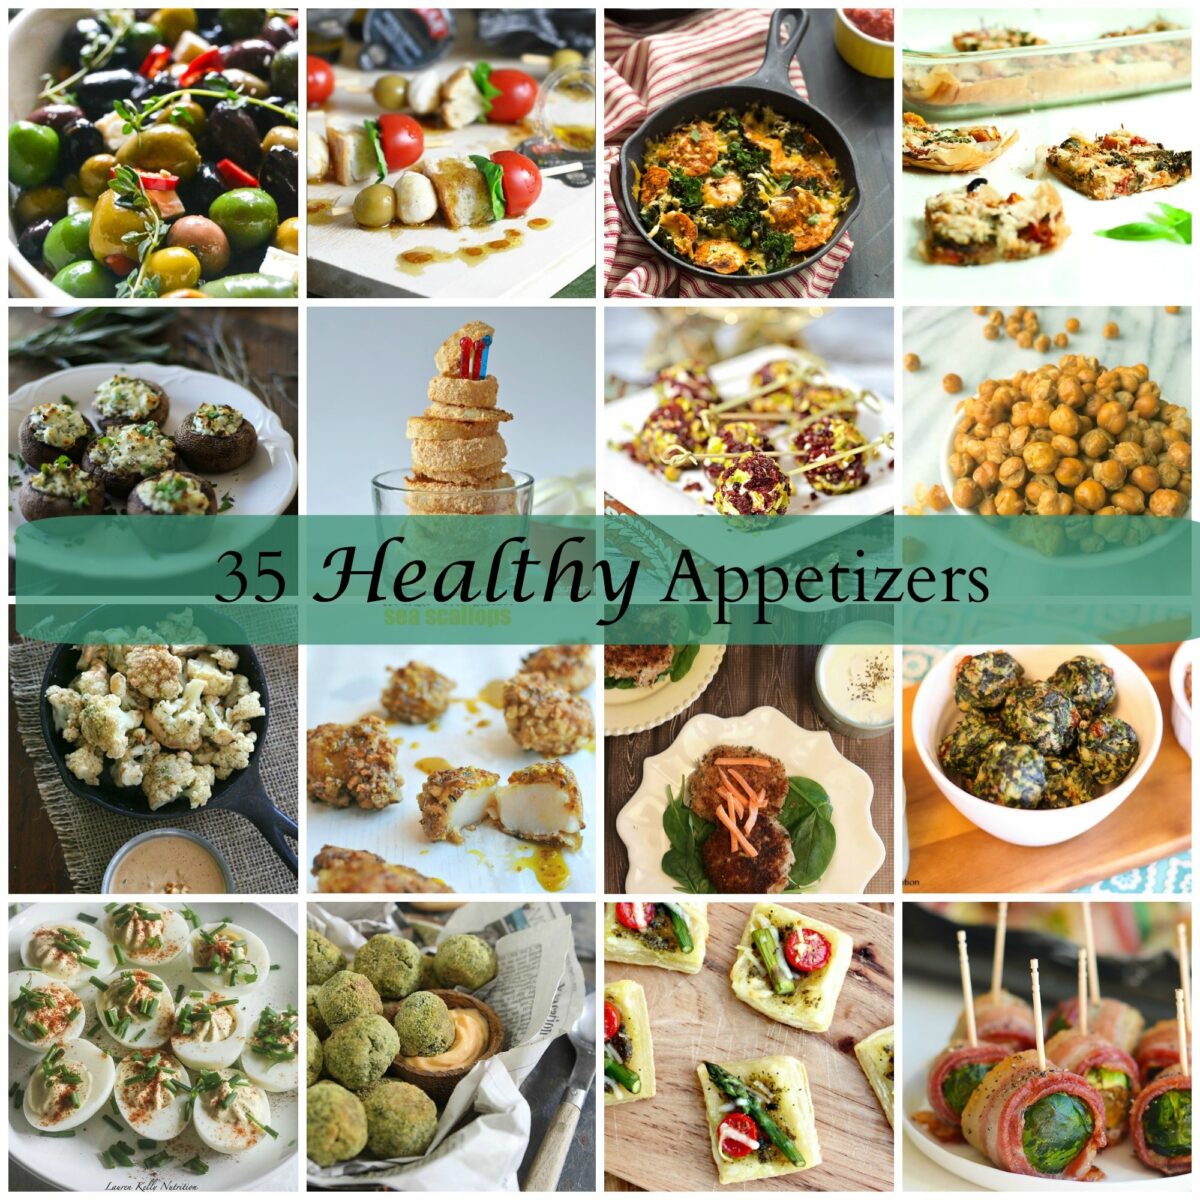 35 Healthy Appetizers from Lauren Kelly Nutrition.